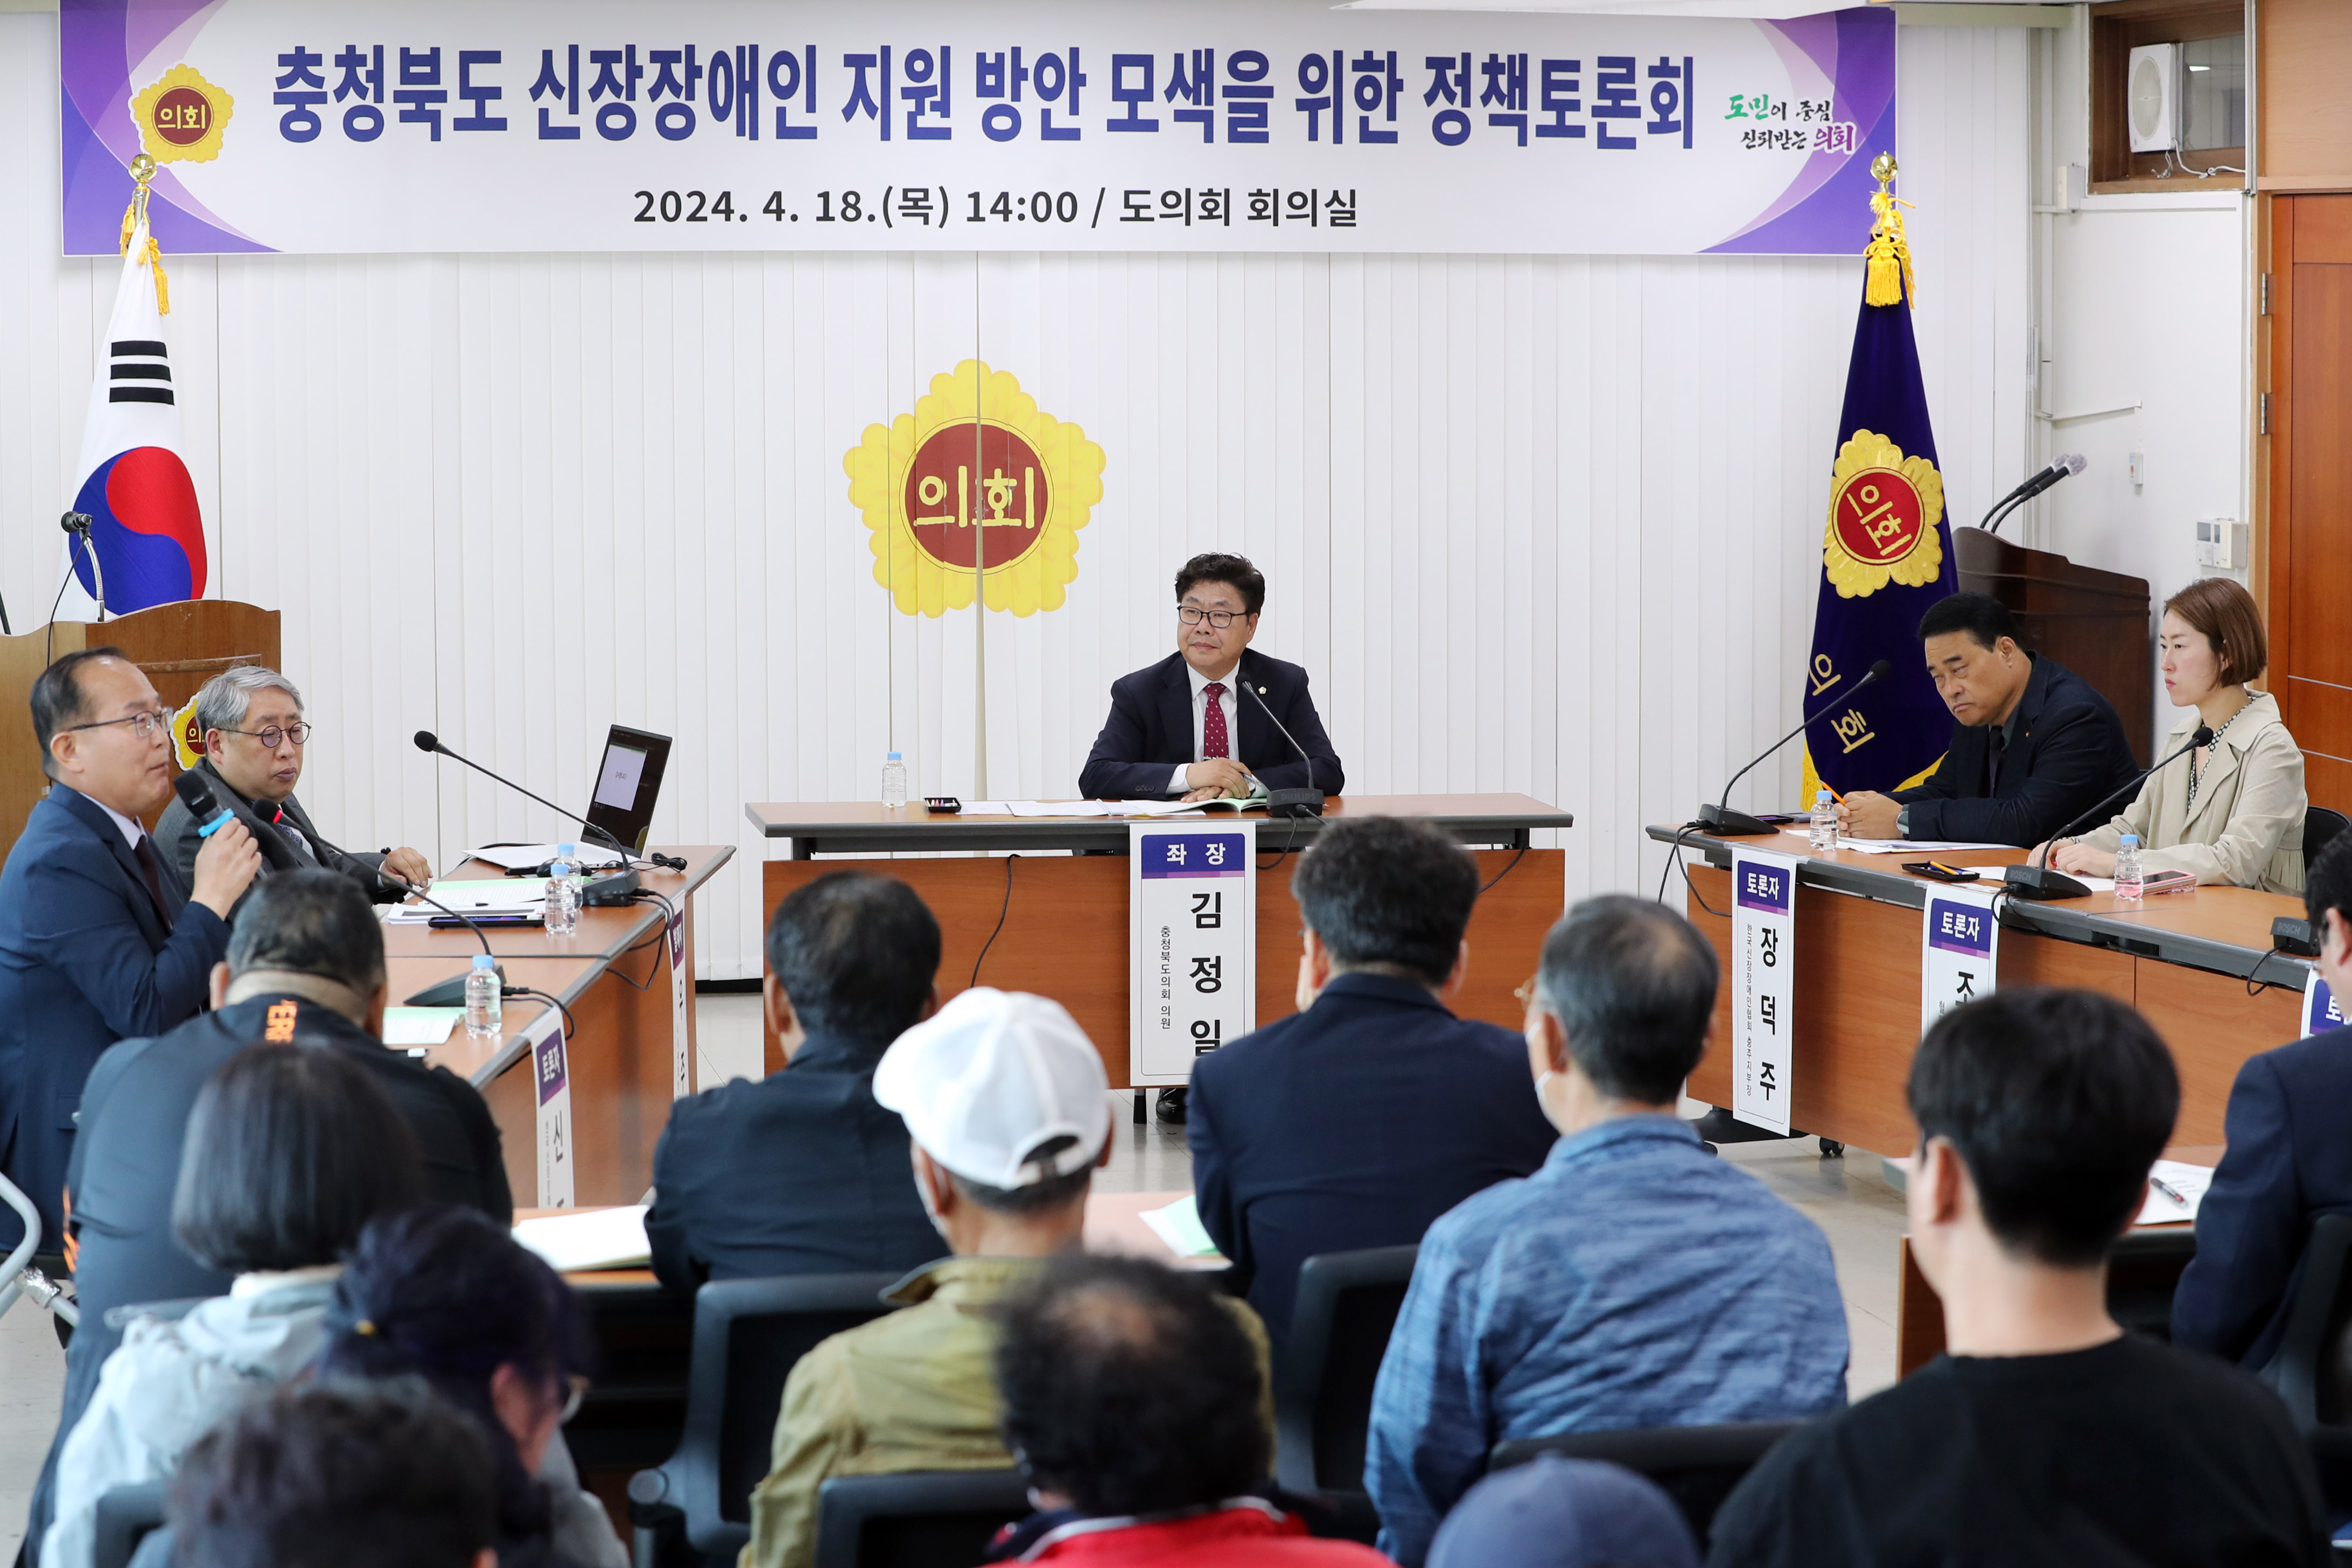 20240418 - 충청북도 신장장애인 지원 방안 모색을 위한 정책토론회